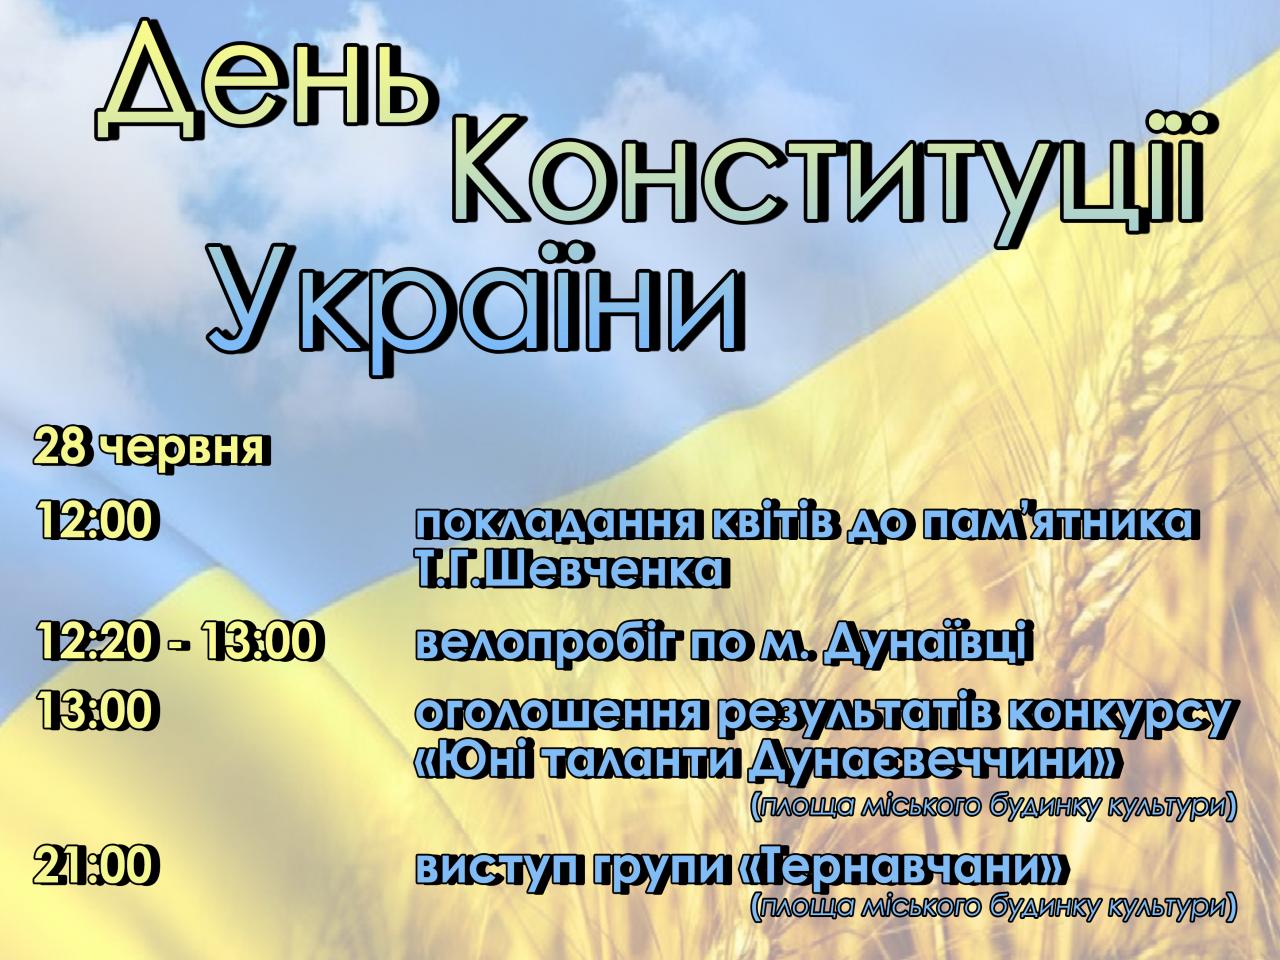 http://dunrada.gov.ua/uploadfile/archive_news/2020/06/24/2020-06-24_8122/images/images-42141.jpg